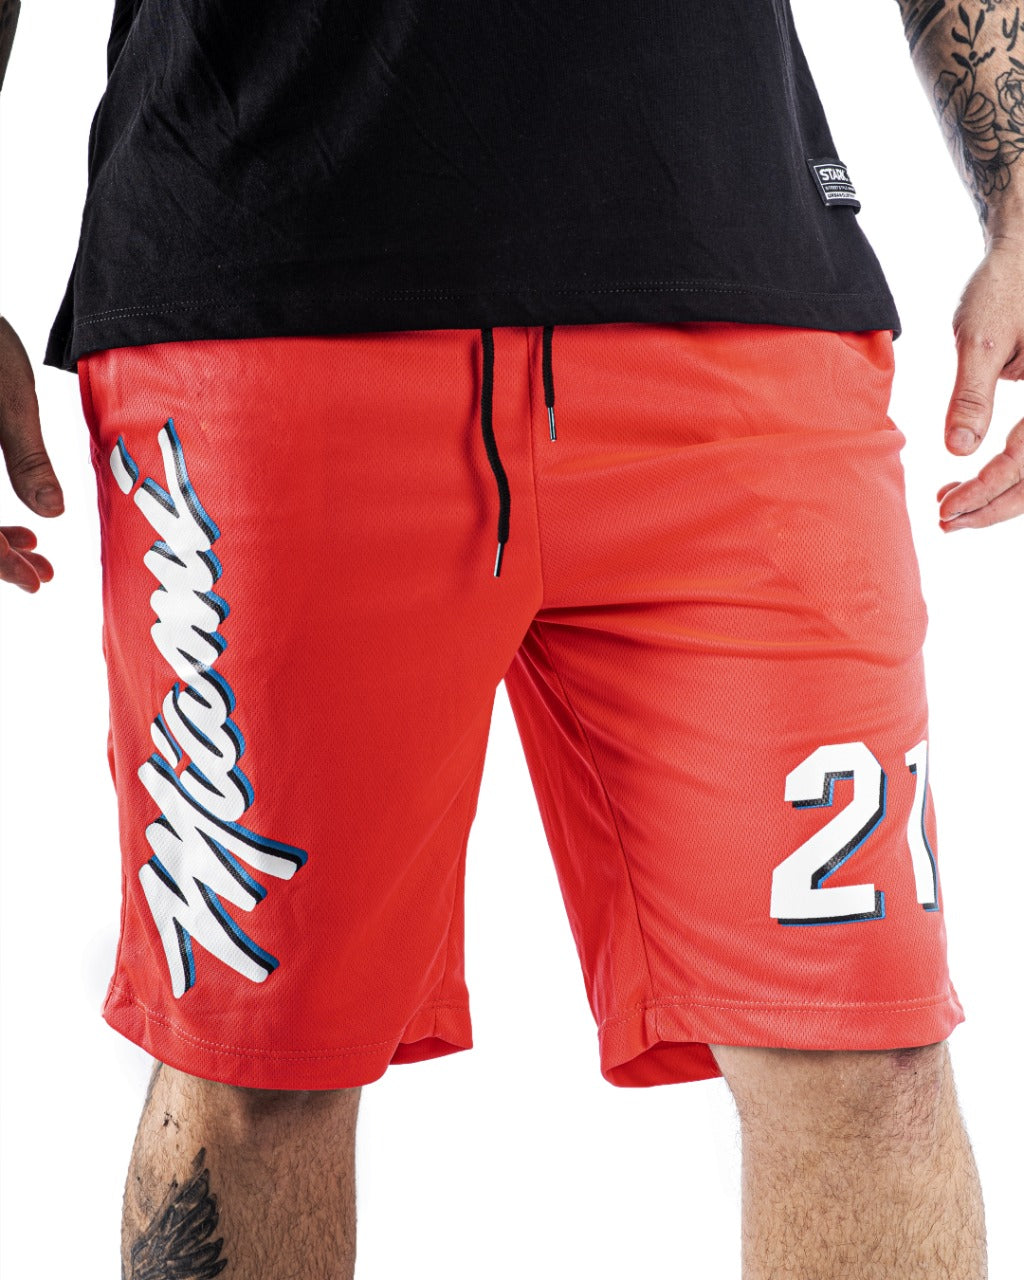 Pantaloneta Fucsia Miami - Stark Brand